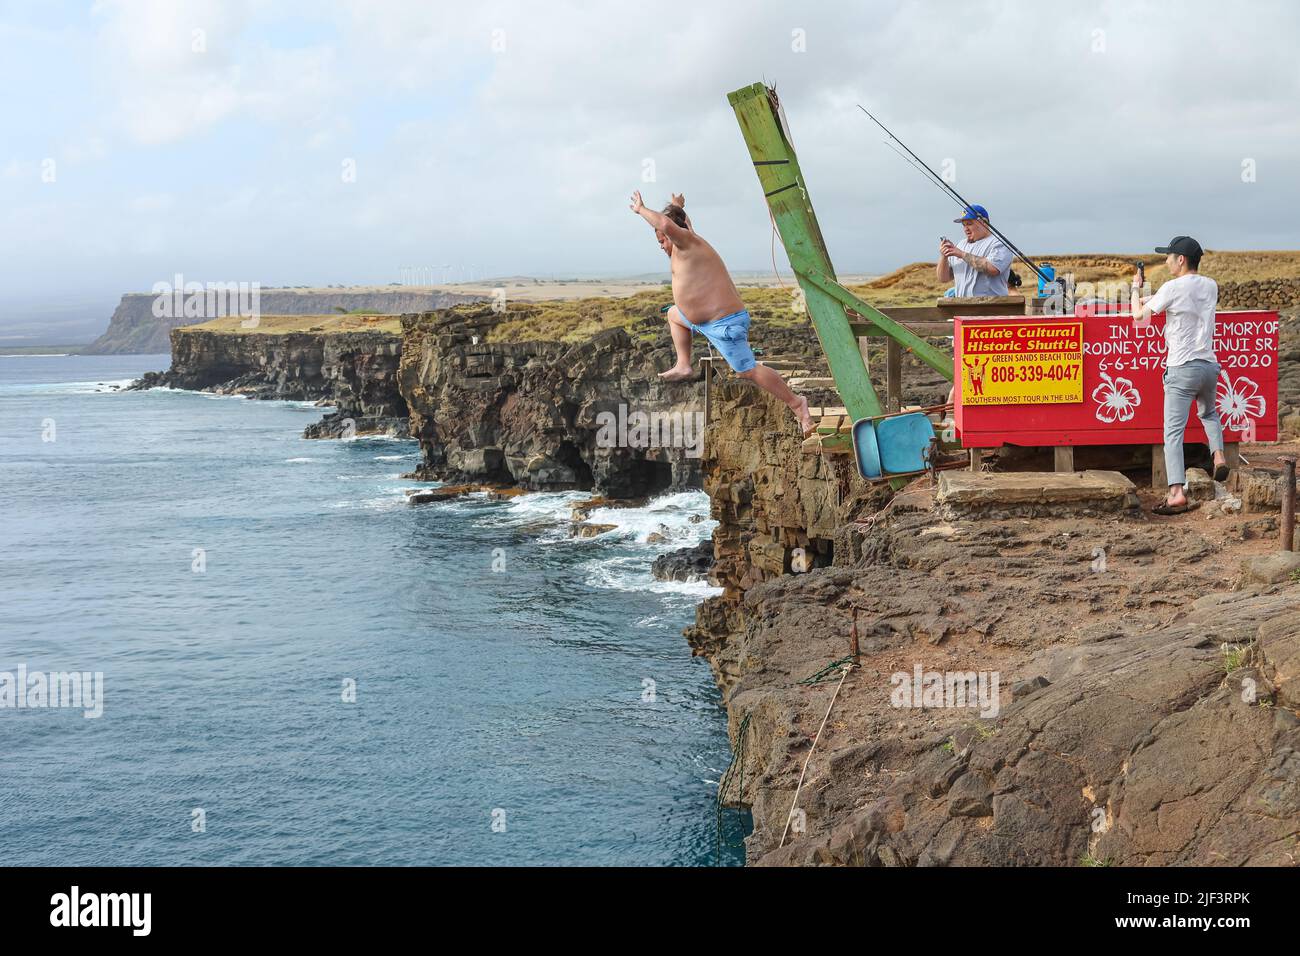 Ein Mann springt von den Klippen des South Point der Big Island ins Meer, während seine Freunde in Hawaii Fotos machen Stockfoto